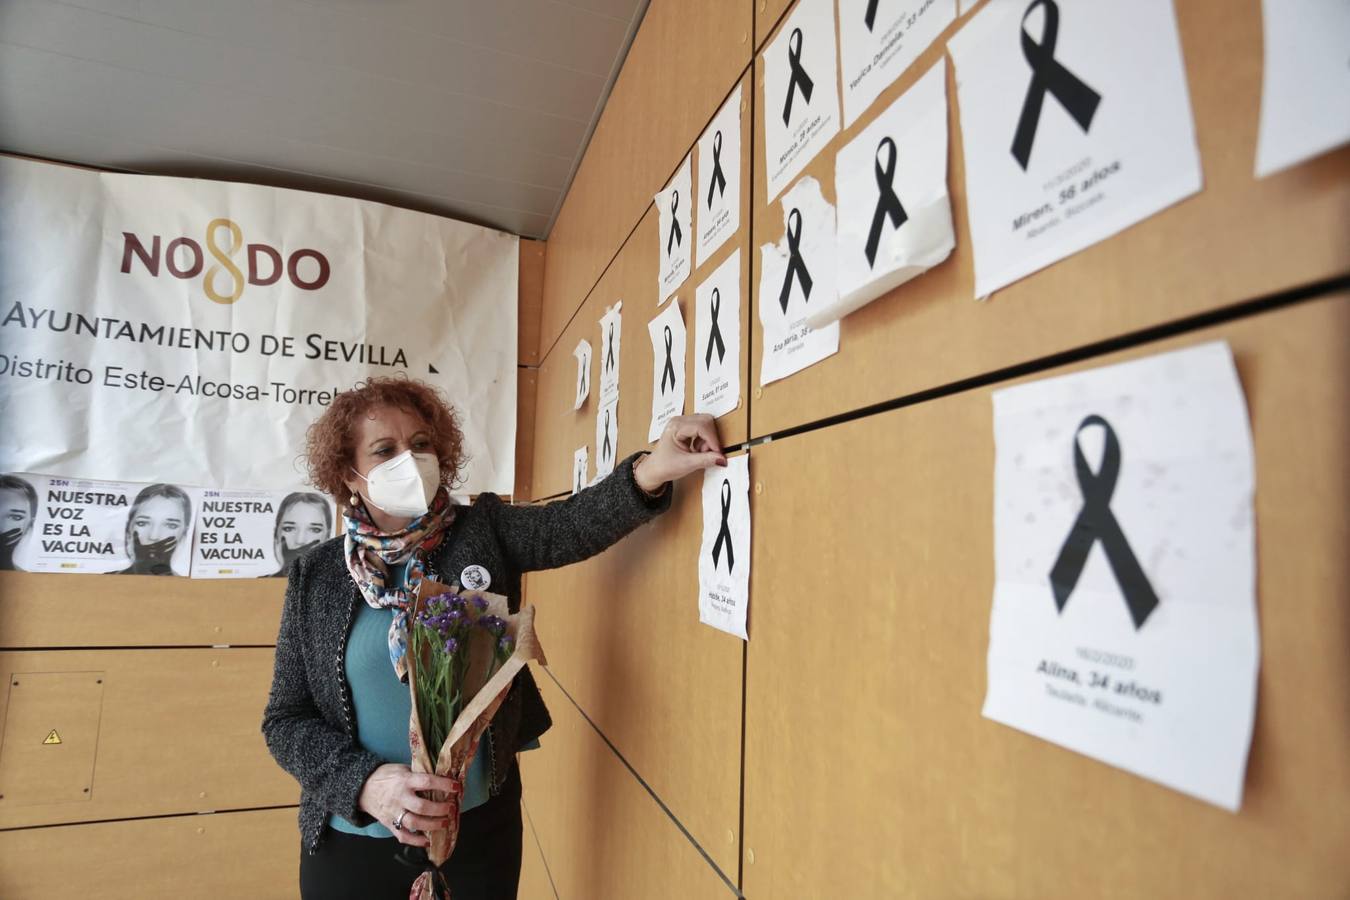 Fotogalería: Actos conmemorativos por el 25-N en Sevilla